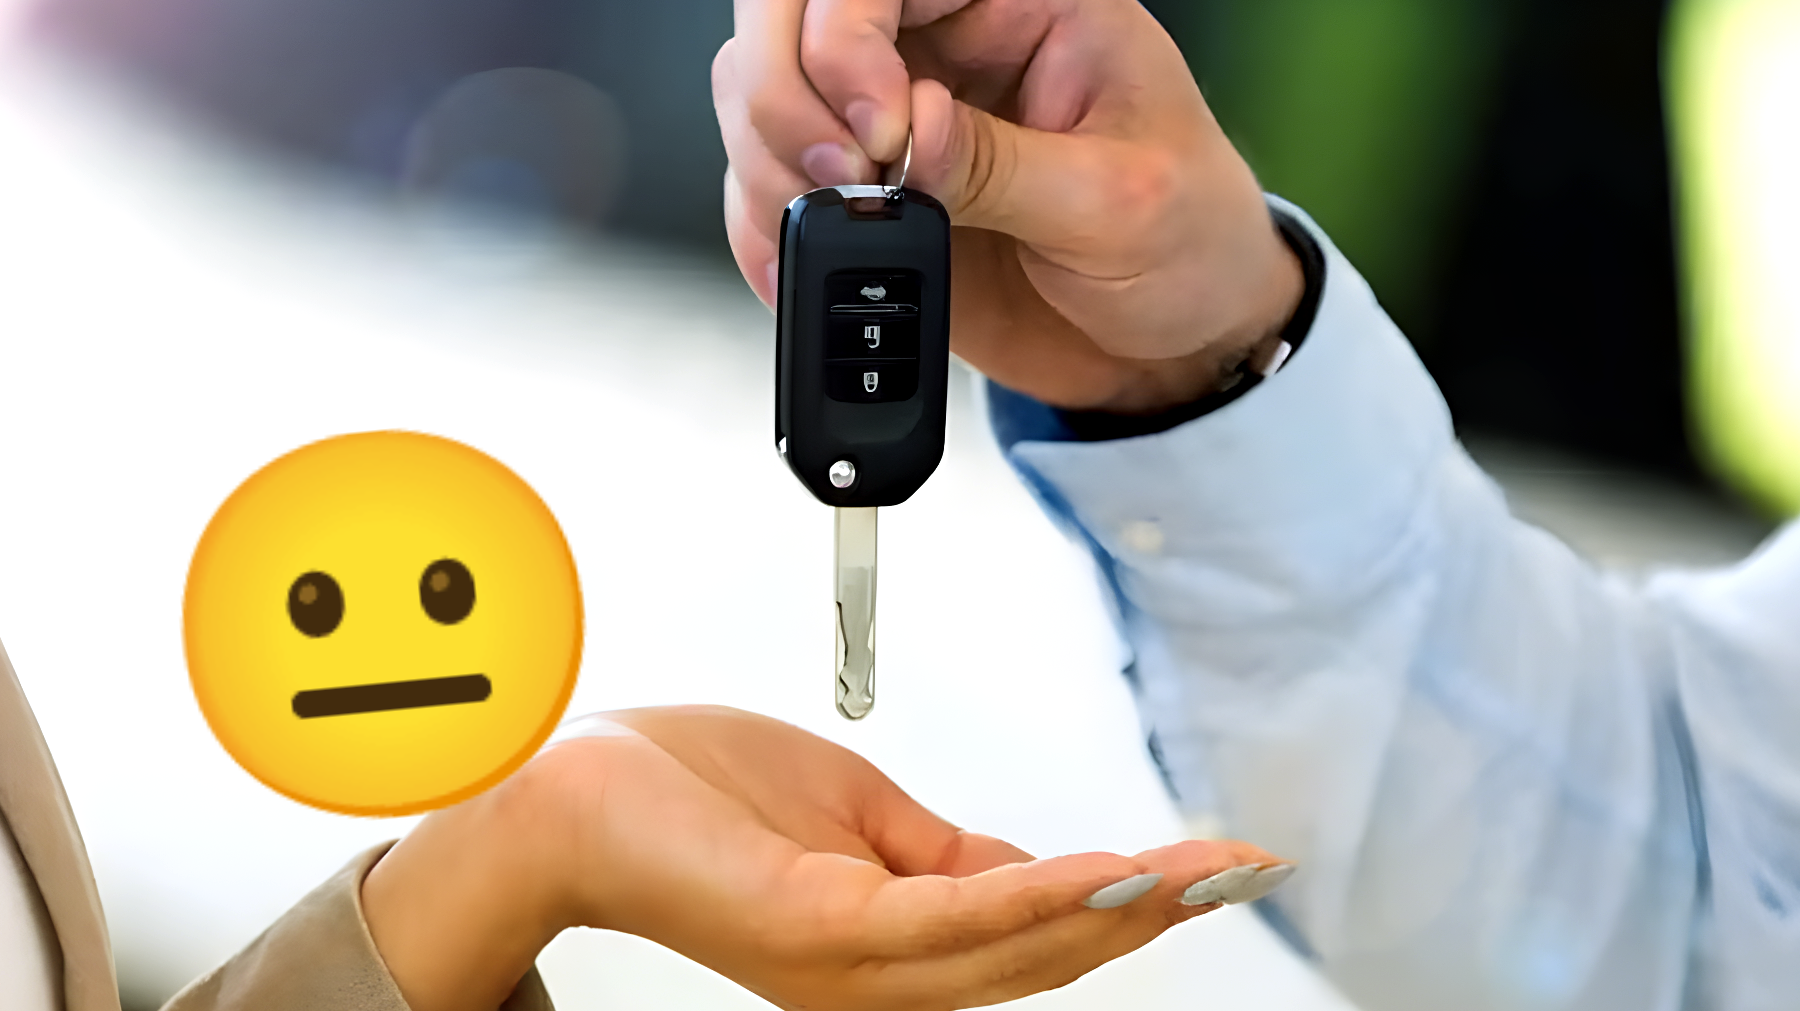 Scopri i tre errori da evitare a tutti i costi quando acquisti un'auto!